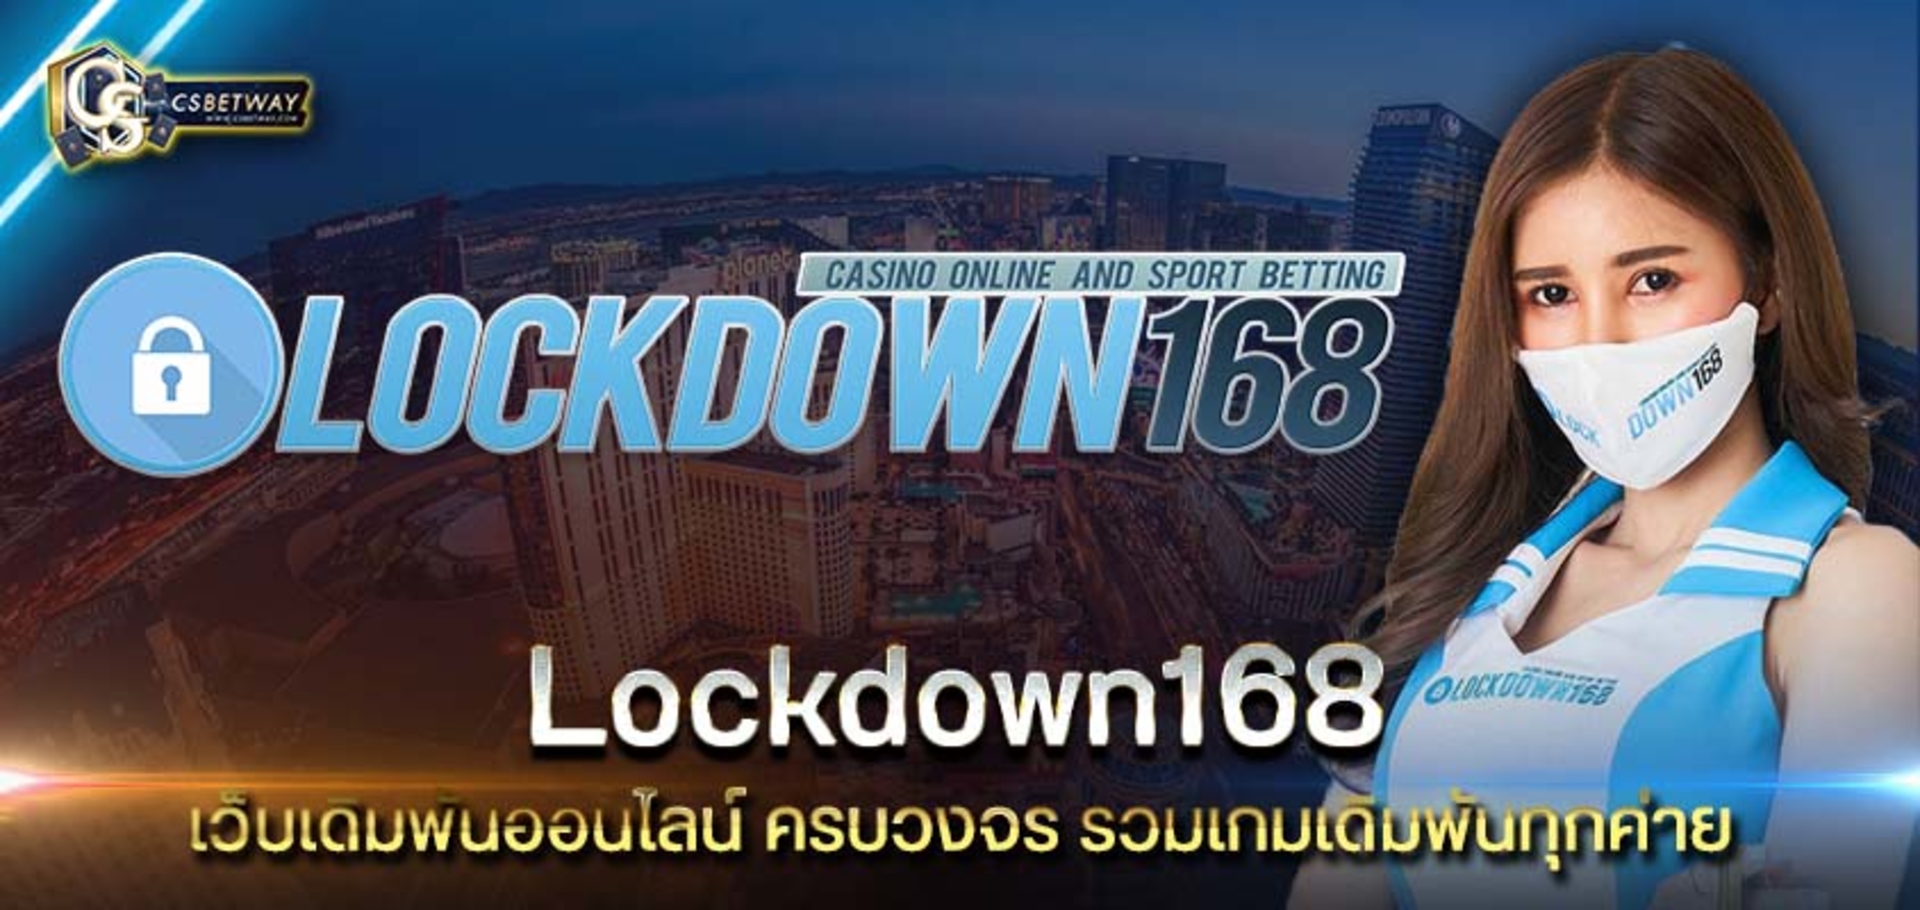 Lockdown168 เว็บเดิมพันออนไลน์ Lockdown168 รวมเกมเดิมพันทุกค่าย